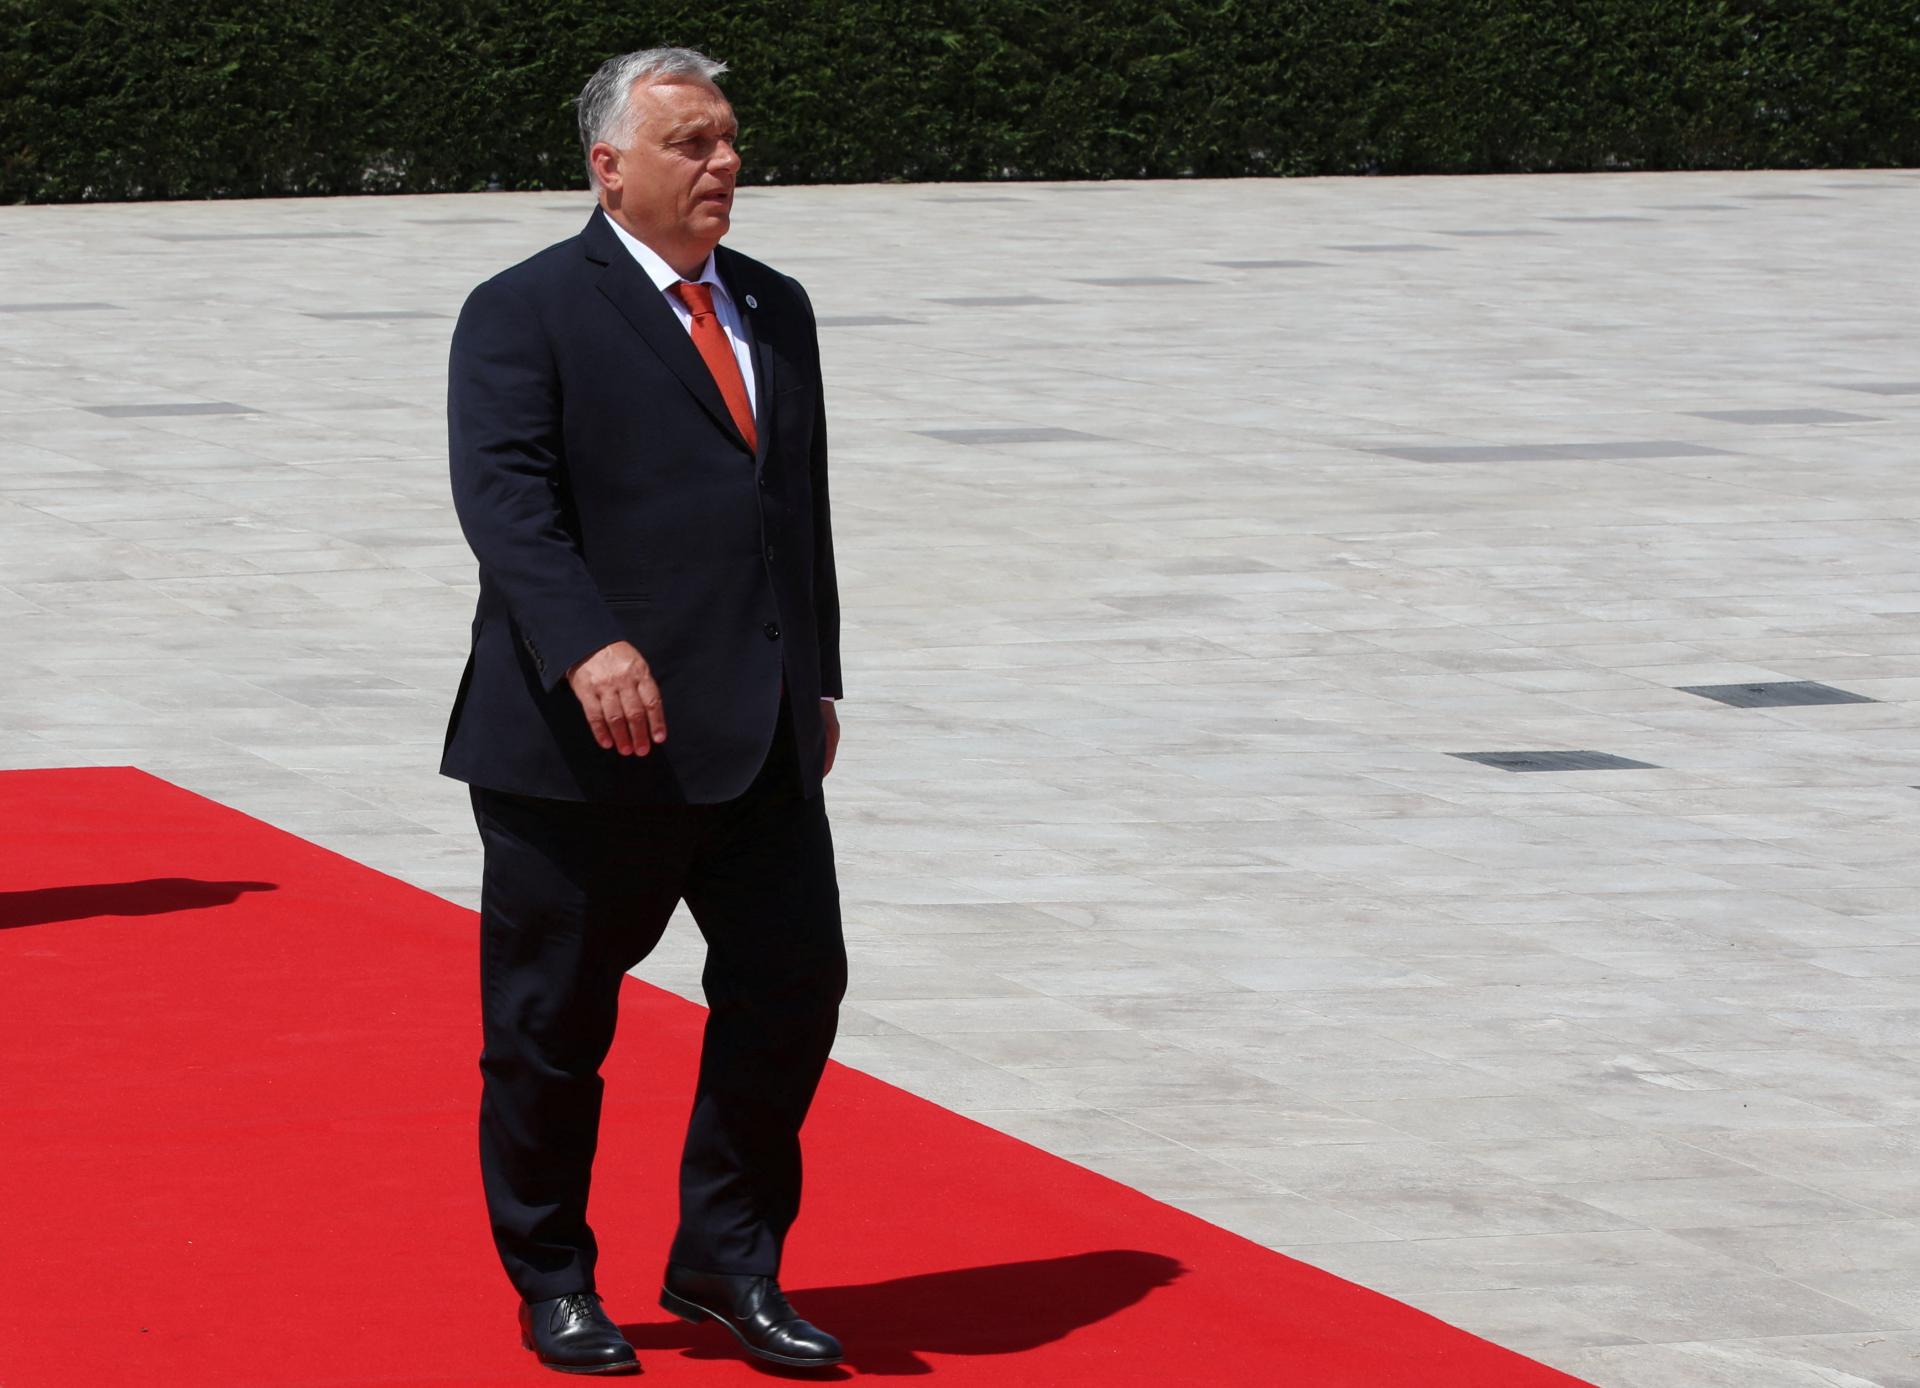 Maďarsko začalo prípravy na predsedníctvo v Rade Európskej únie. Europarlament má obavy z Orbánovej politiky